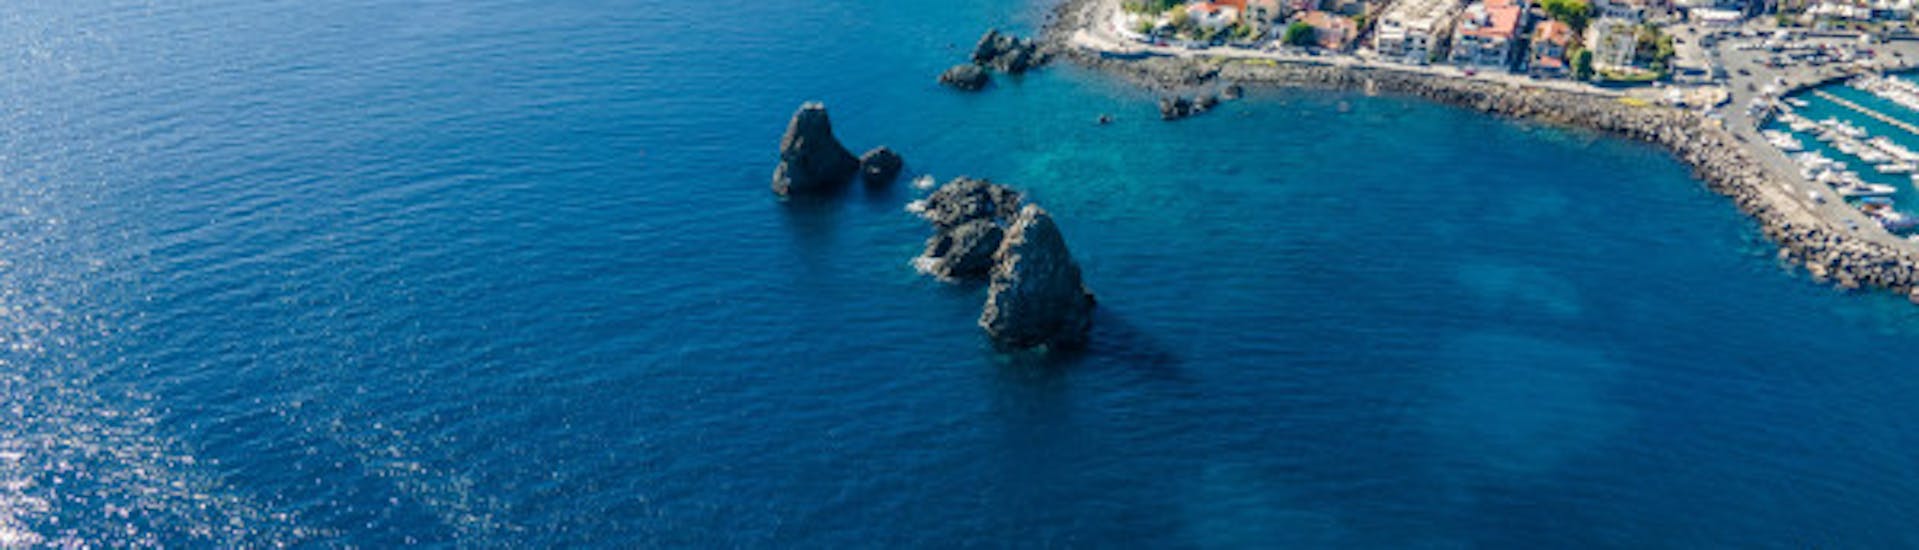 Bootstour von Aci Trezza - Cyclops Islands  & Schwimmen.